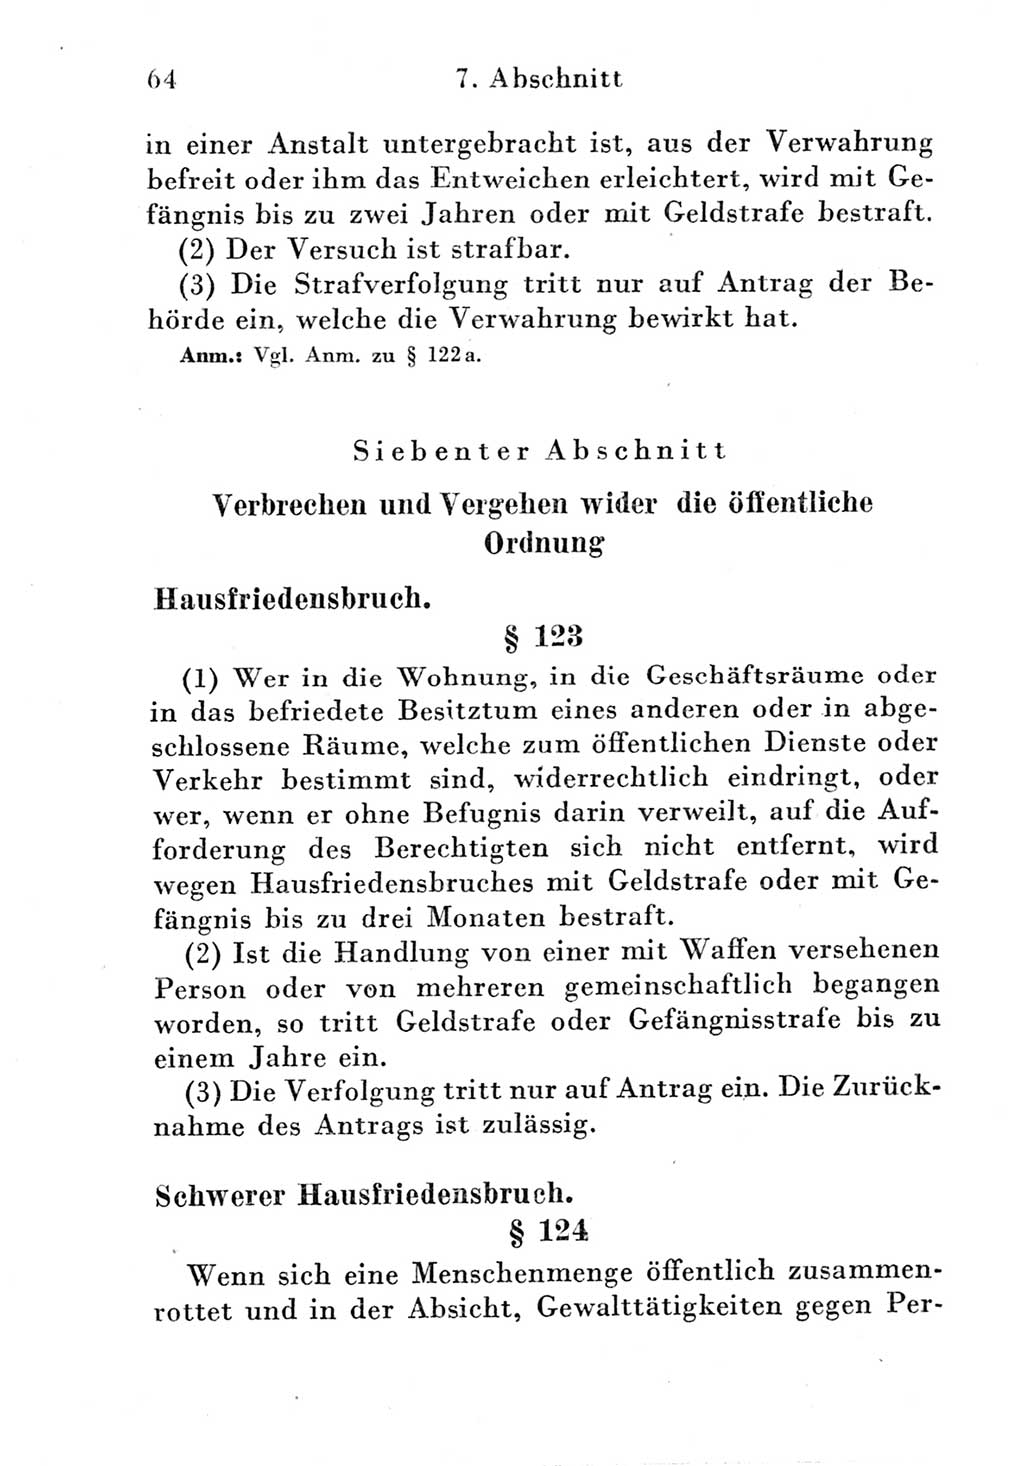 Strafgesetzbuch (StGB) und andere Strafgesetze [Deutsche Demokratische Republik (DDR)] 1951, Seite 64 (StGB Strafges. DDR 1951, S. 64)